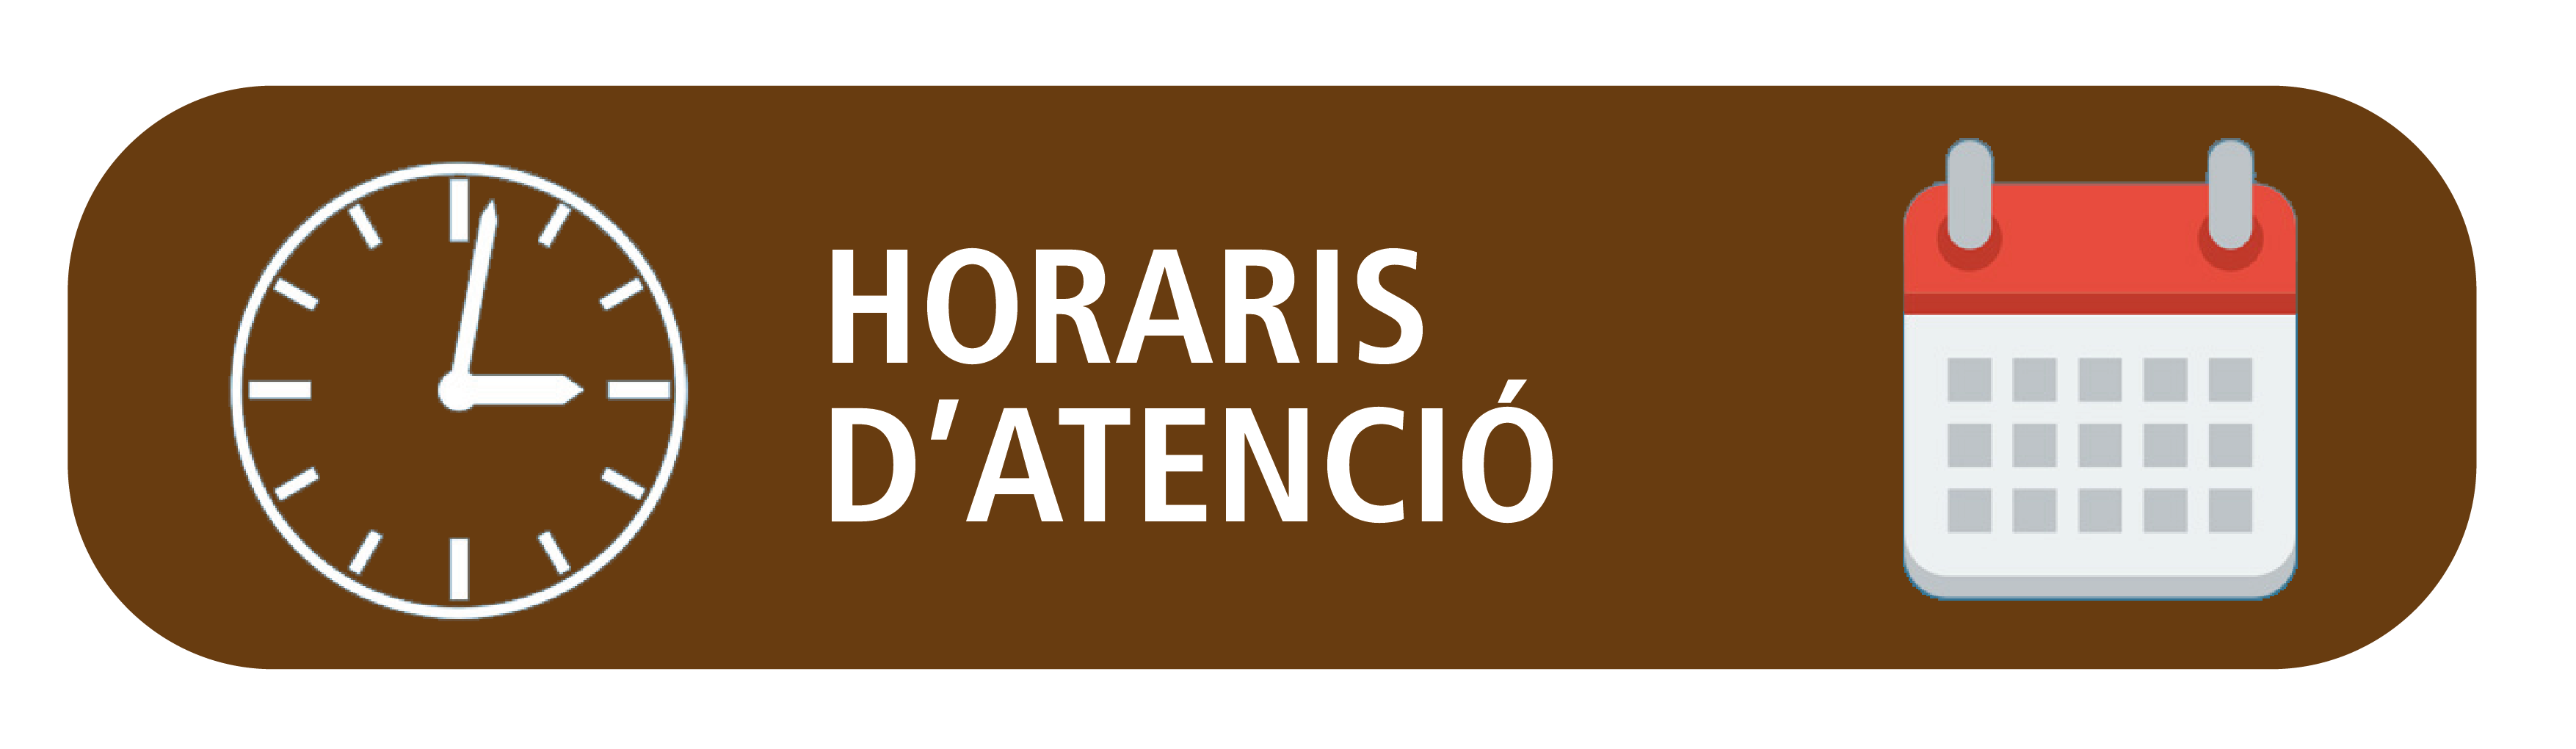 HORARIS D'ATENCIÓ